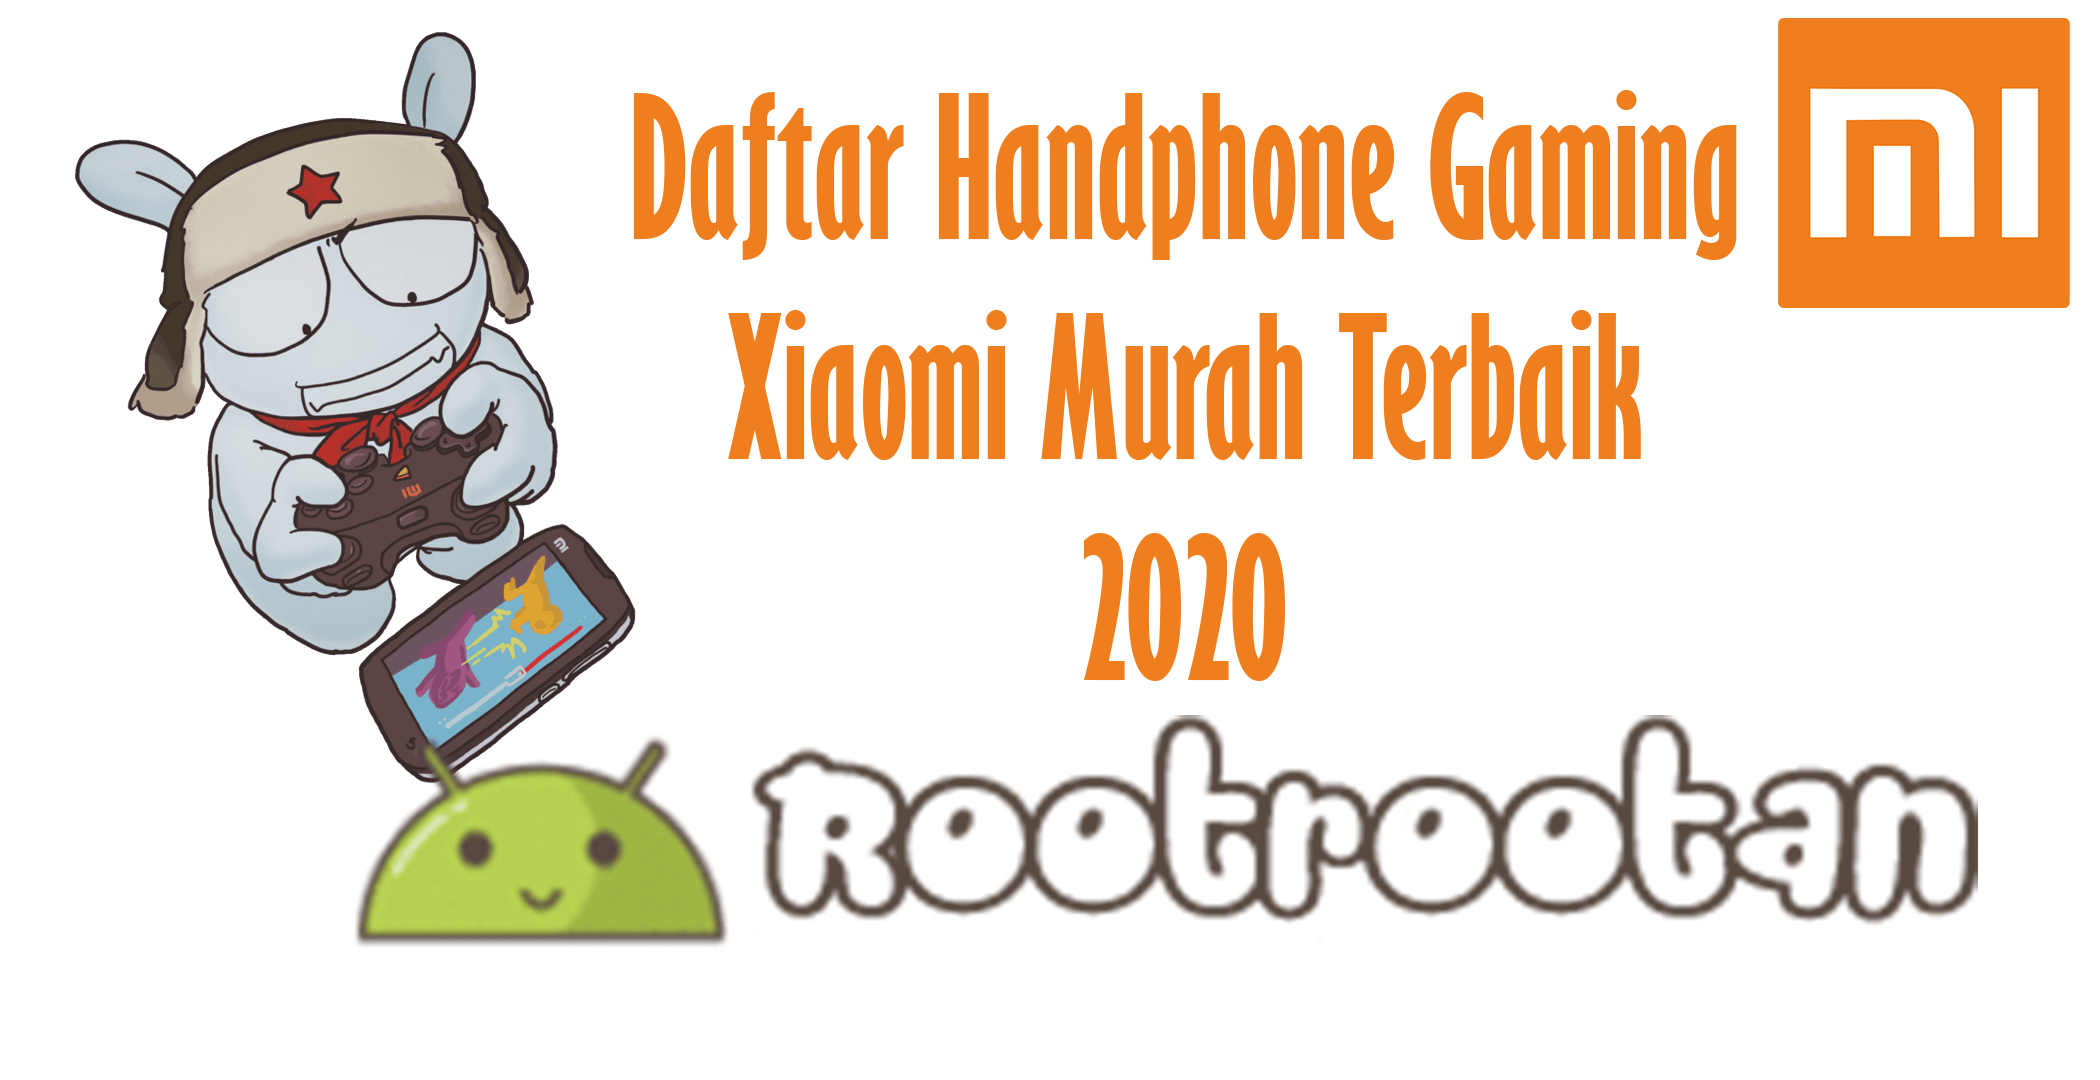 Daftar Handphone Gaming Xiaomi Murah Terbaik